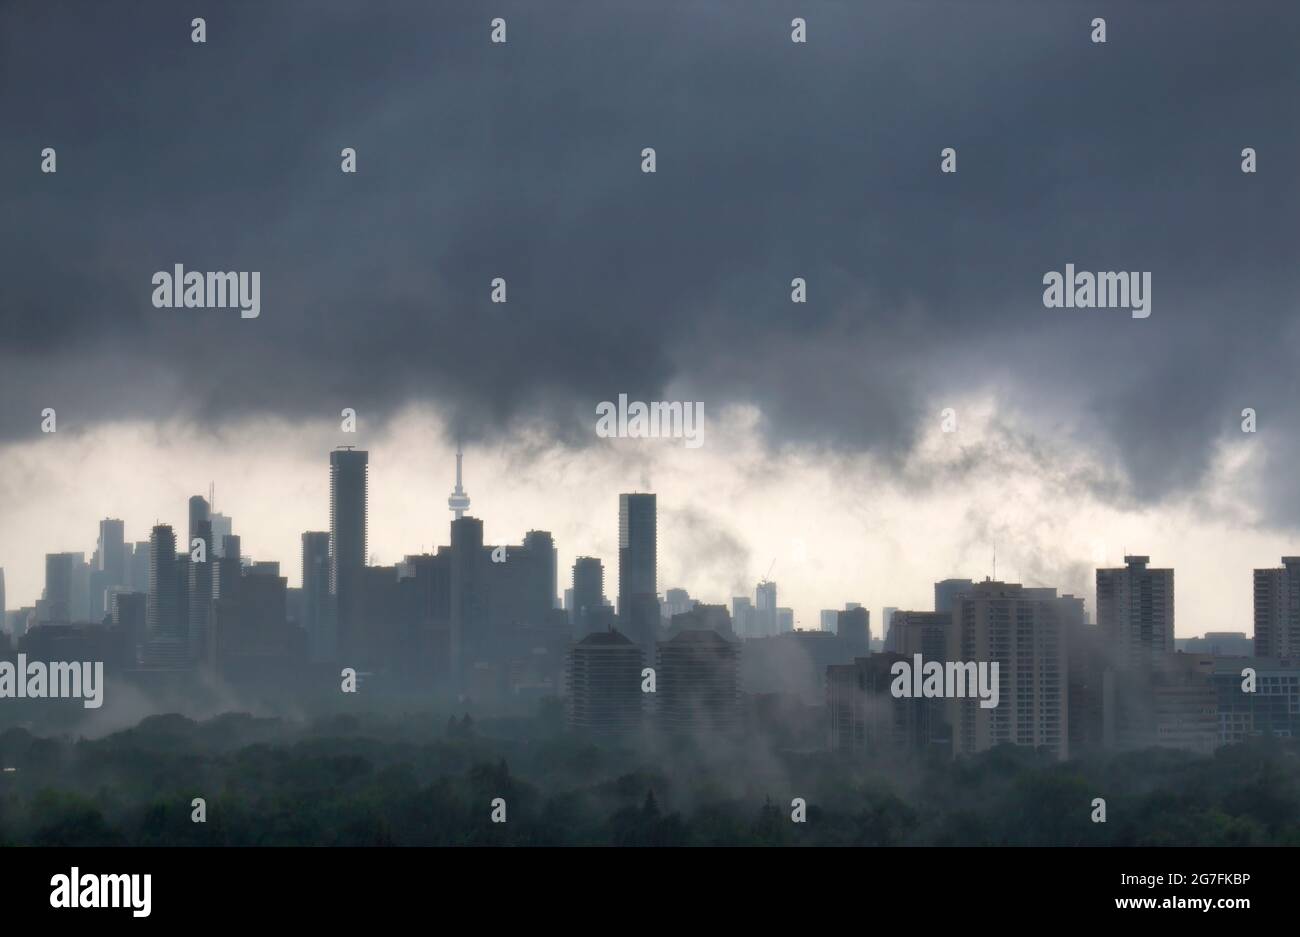 Les édifices du centre-ville de Toronto sont entourés de nuages sombres pendant la tempête de tonnerre estivale Banque D'Images